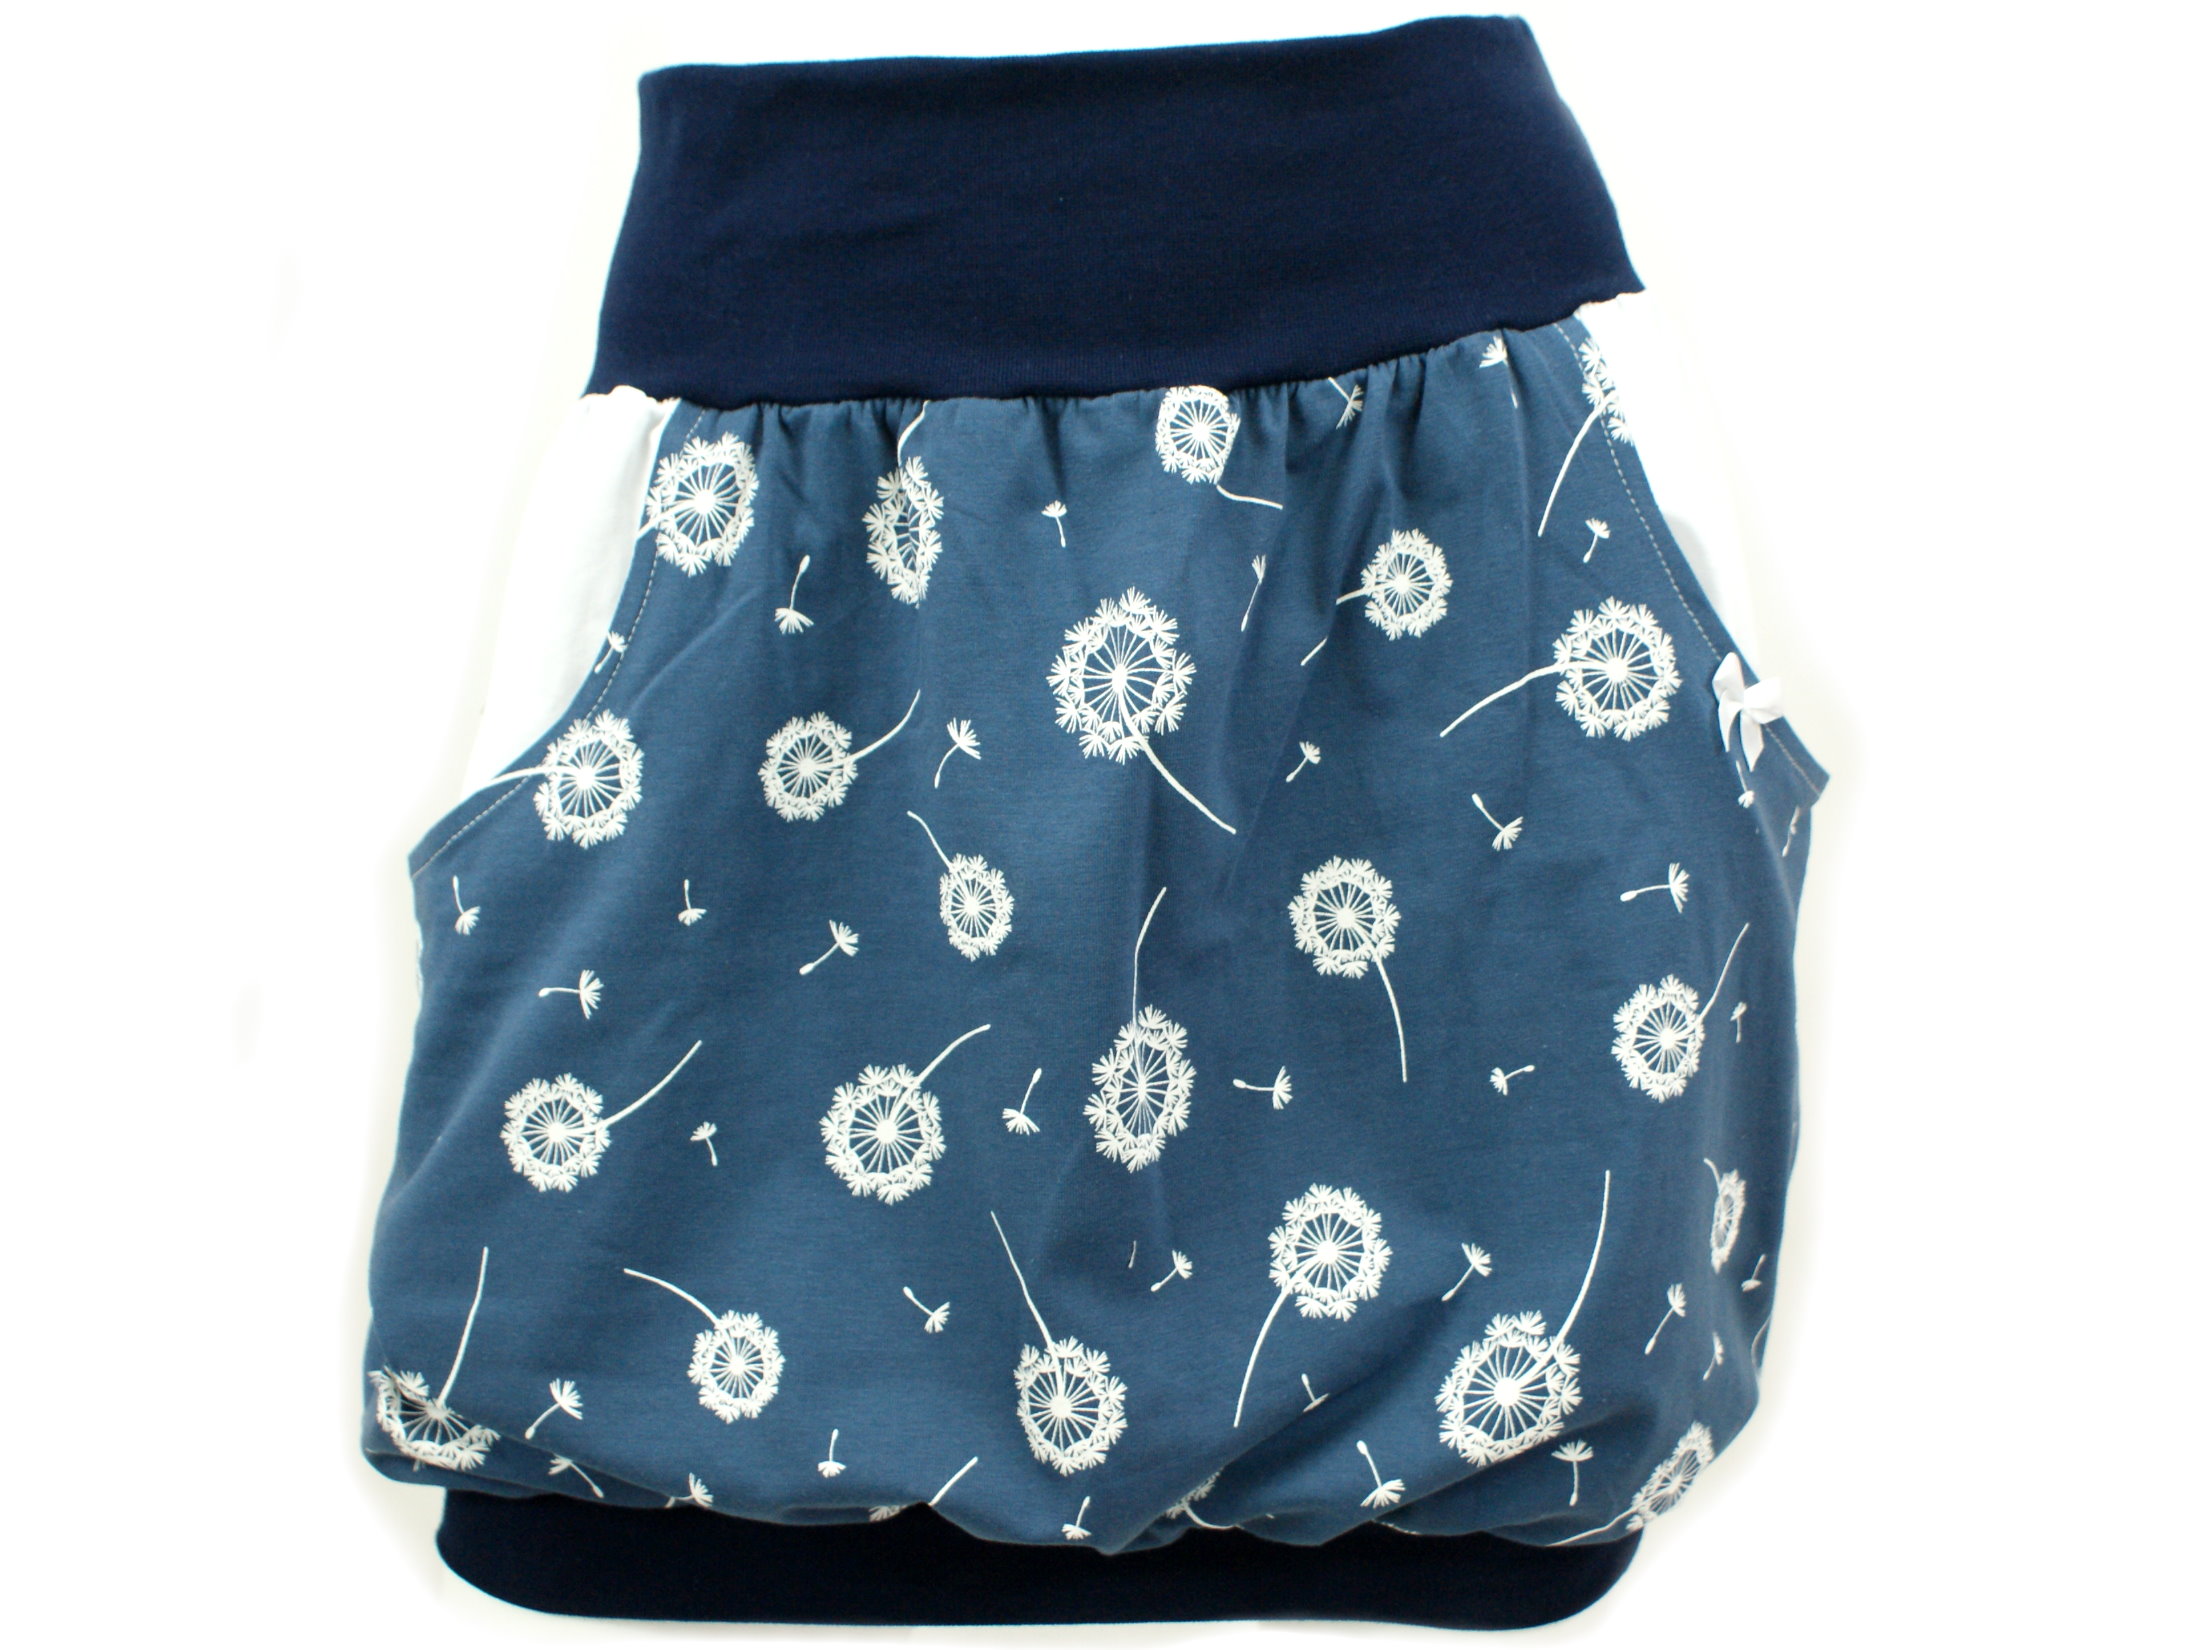 Damen Ballonrock "Pusteblumen" blau weiß mit Taschen